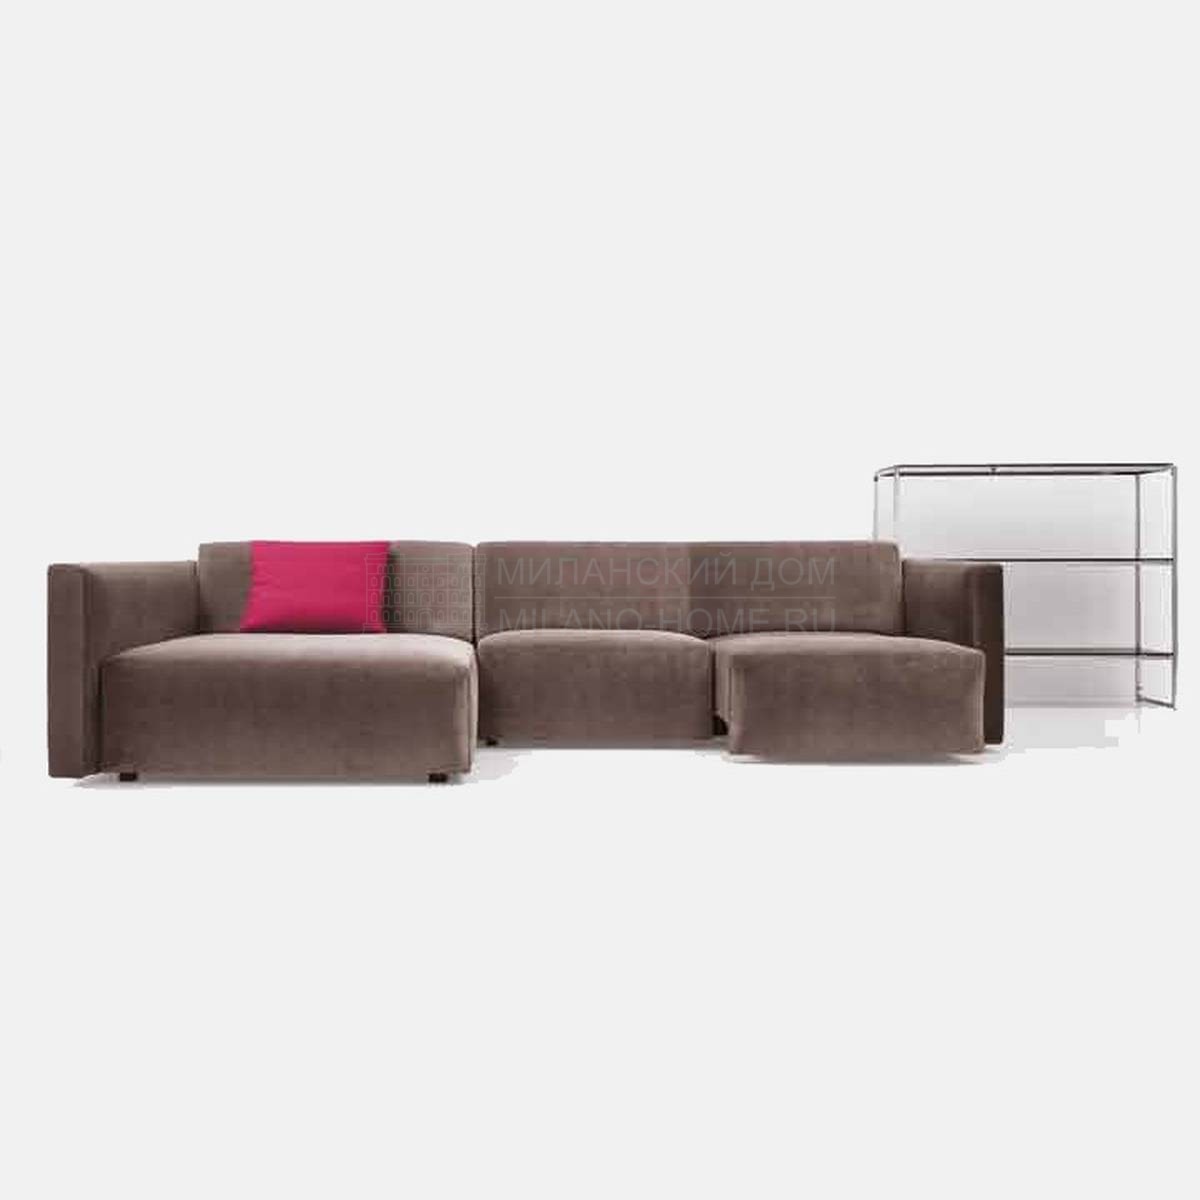 Модульный диван Urban/ sofa из Италии фабрики NUBE